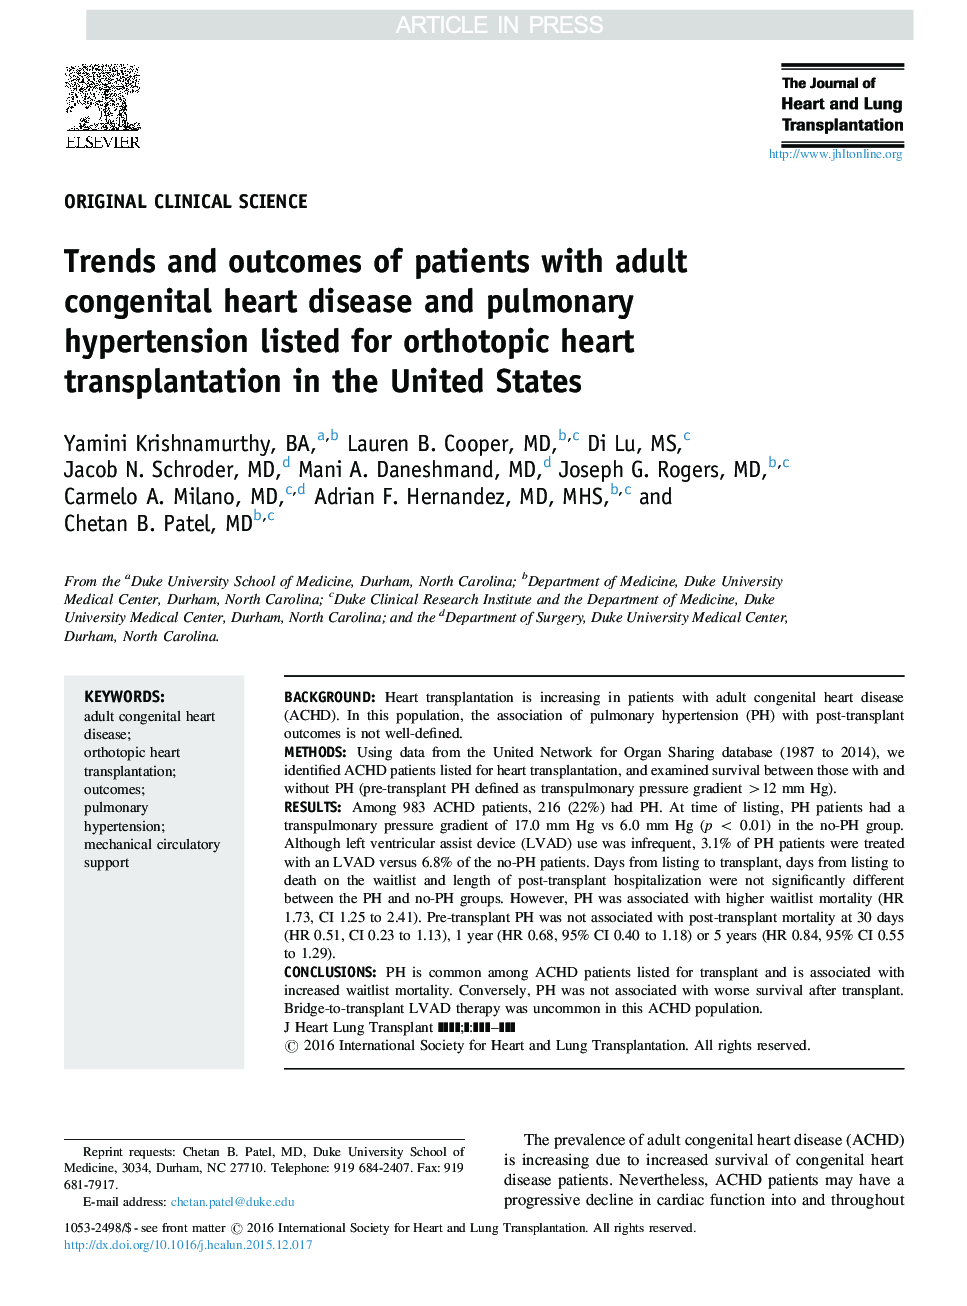 روند و نتایج بیماران مبتلا به بیماری های قلبی مادرزادی قلبی و فشار خون ریوی که برای پیوند قلب اورترتوپیک در ایالات متحده ذکر شده است 